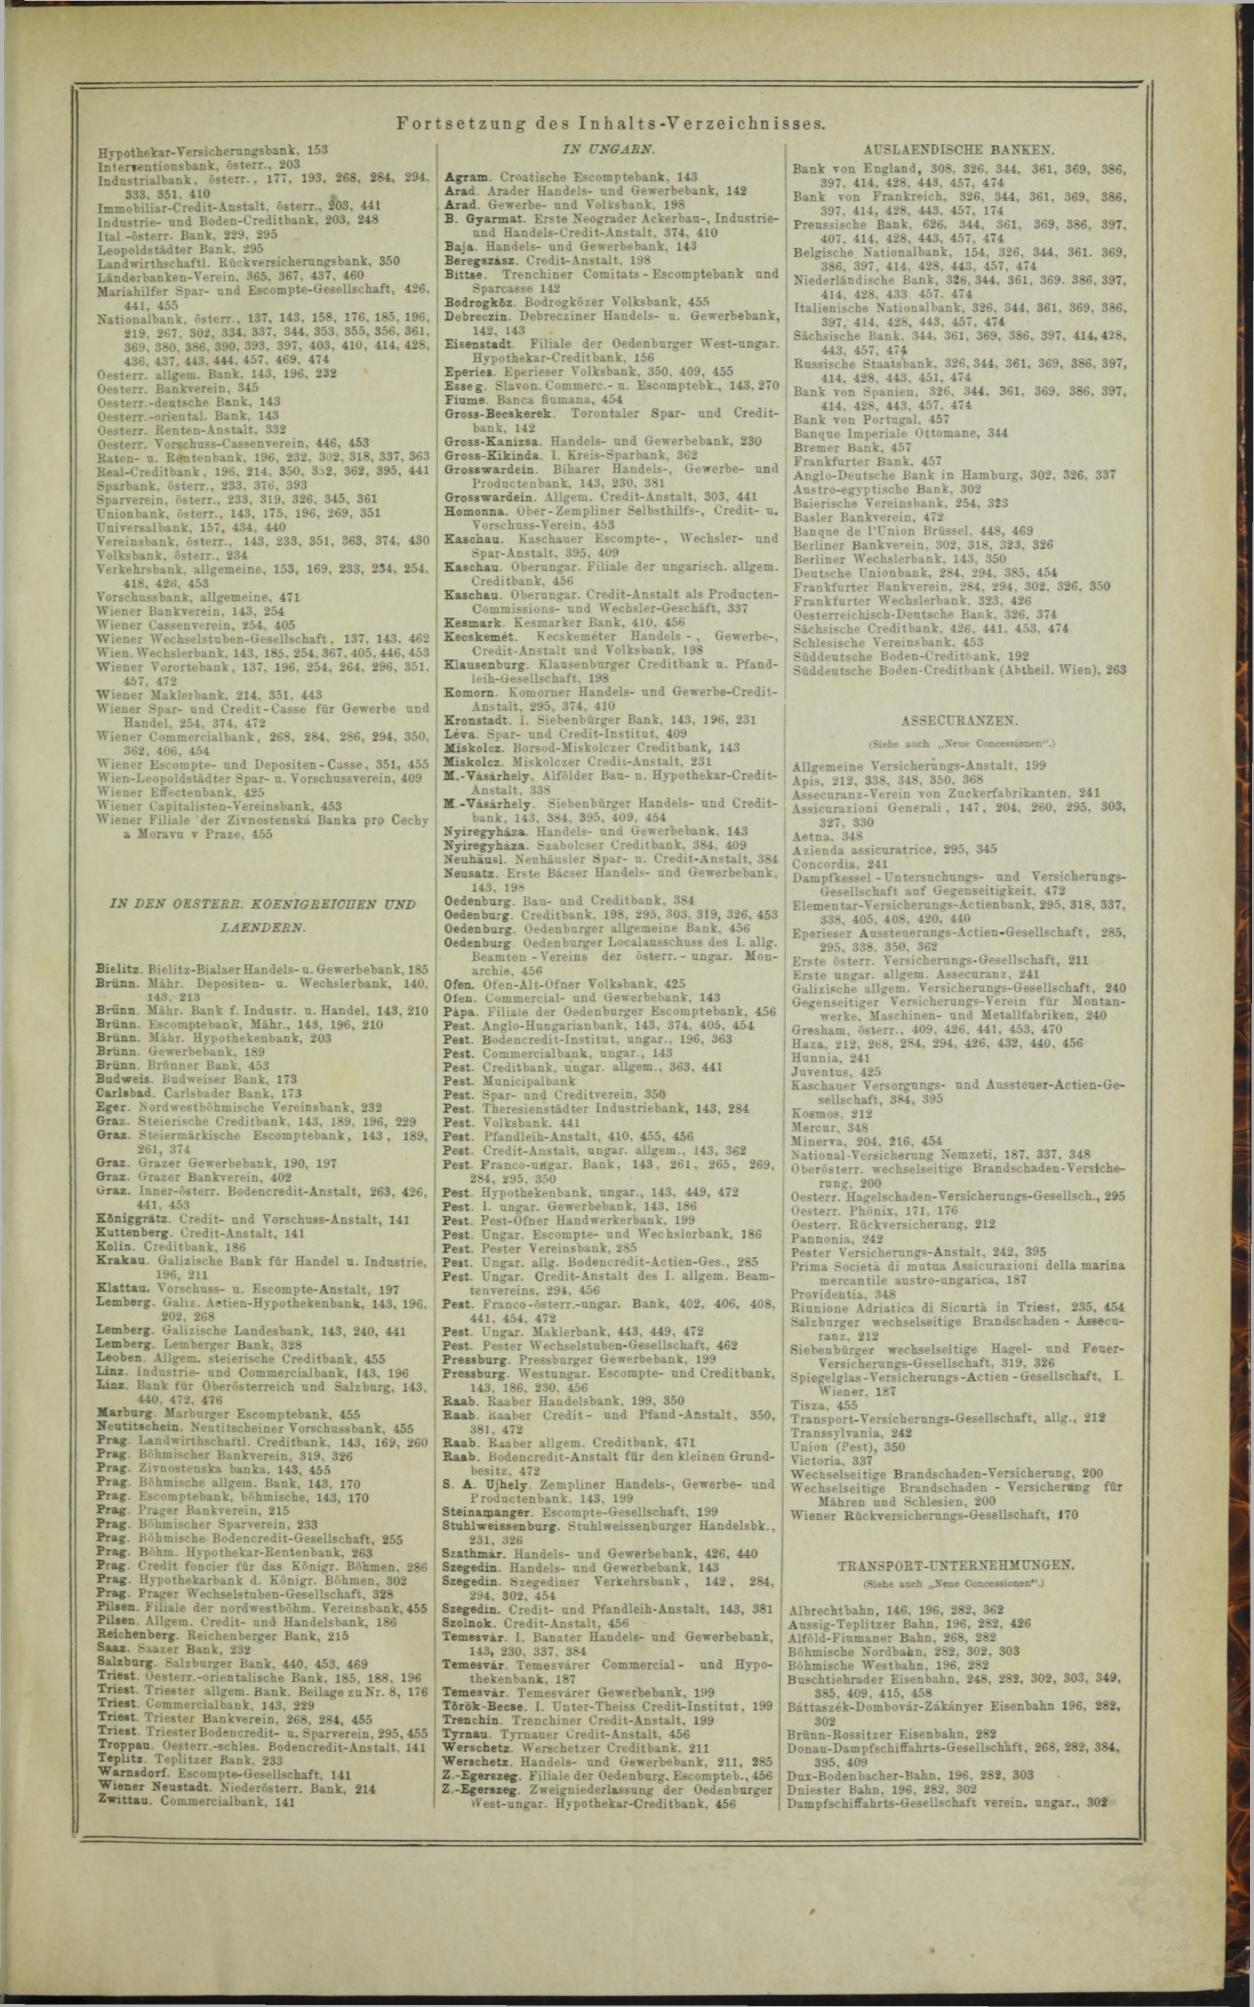 Der Tresor 19.11.1872 - Seite 15